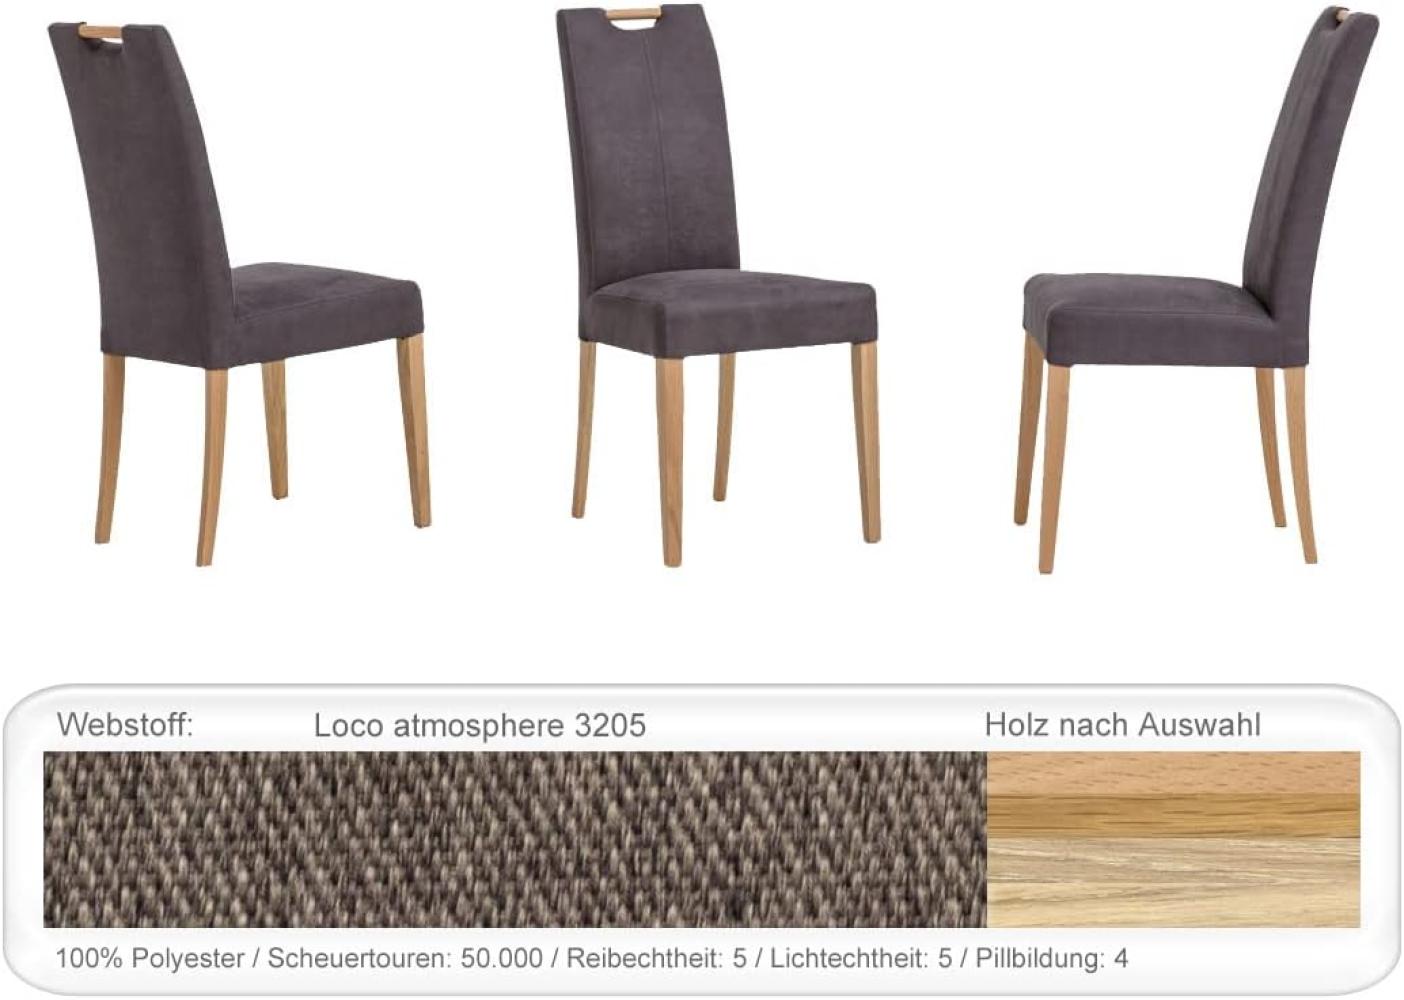 6x Stuhl Silvana Varianten Polsterstuhl Esszimmerstuhl Massivholzstuhl Eiche natur lackiert, Loco atmosphere Bild 1